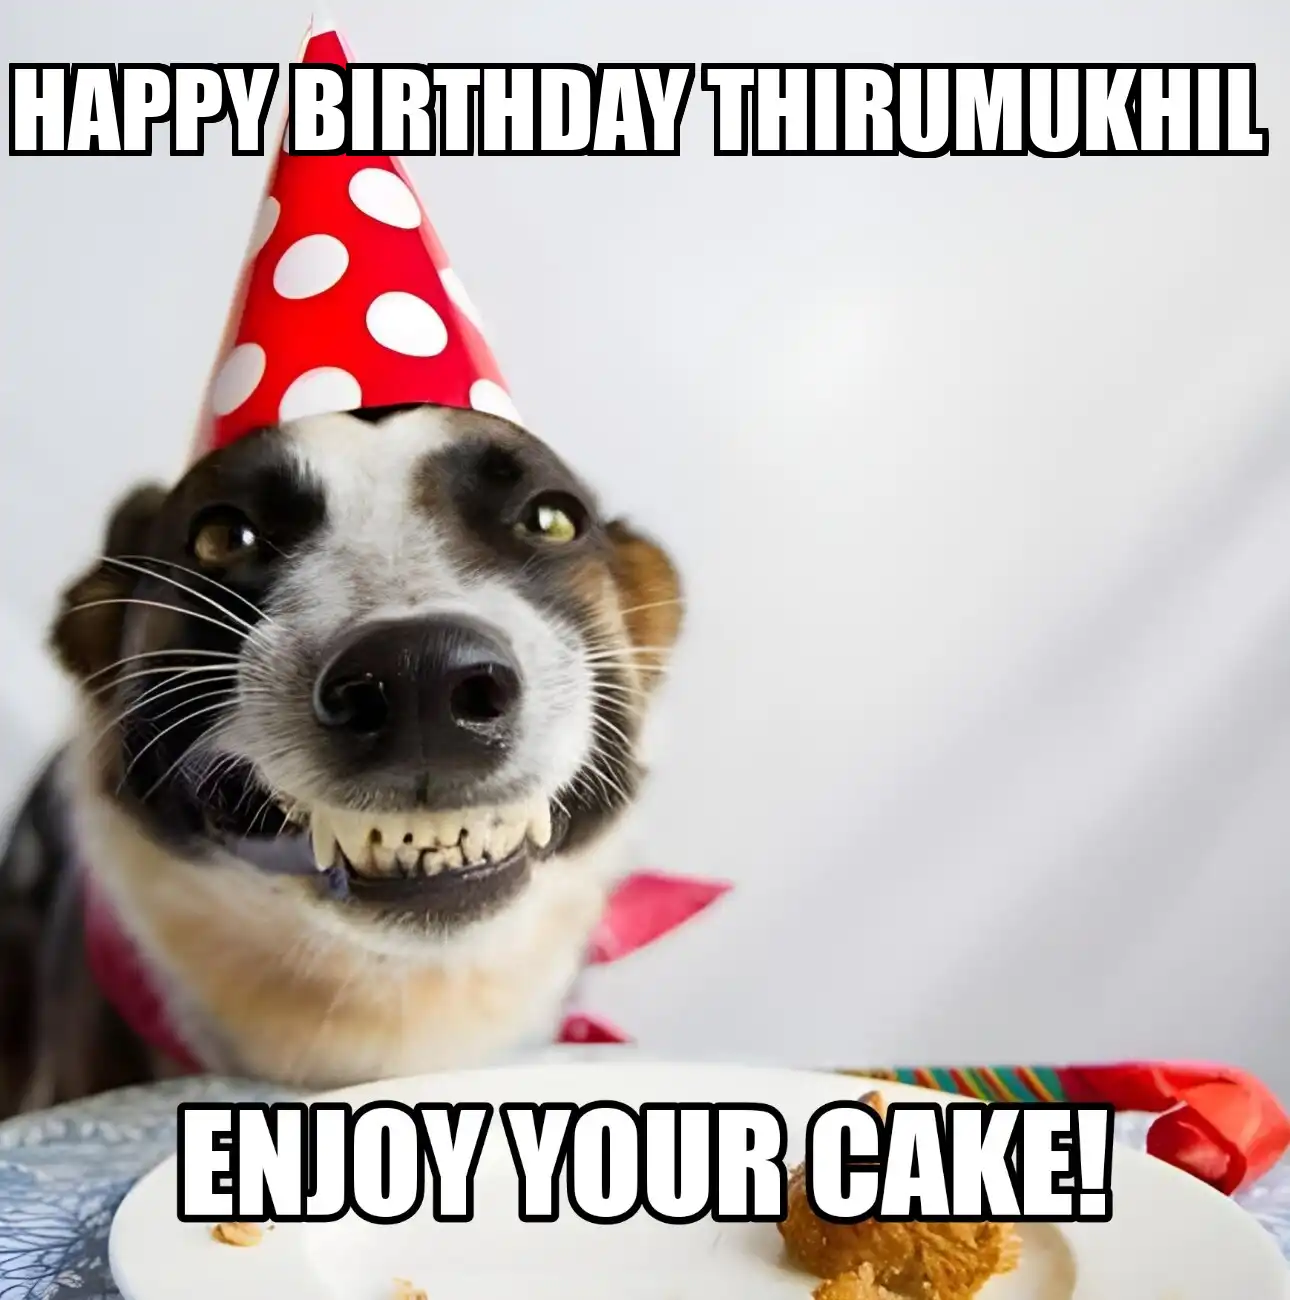 Happy Birthday Thirumukhil Enjoy Your Cake Dog Meme